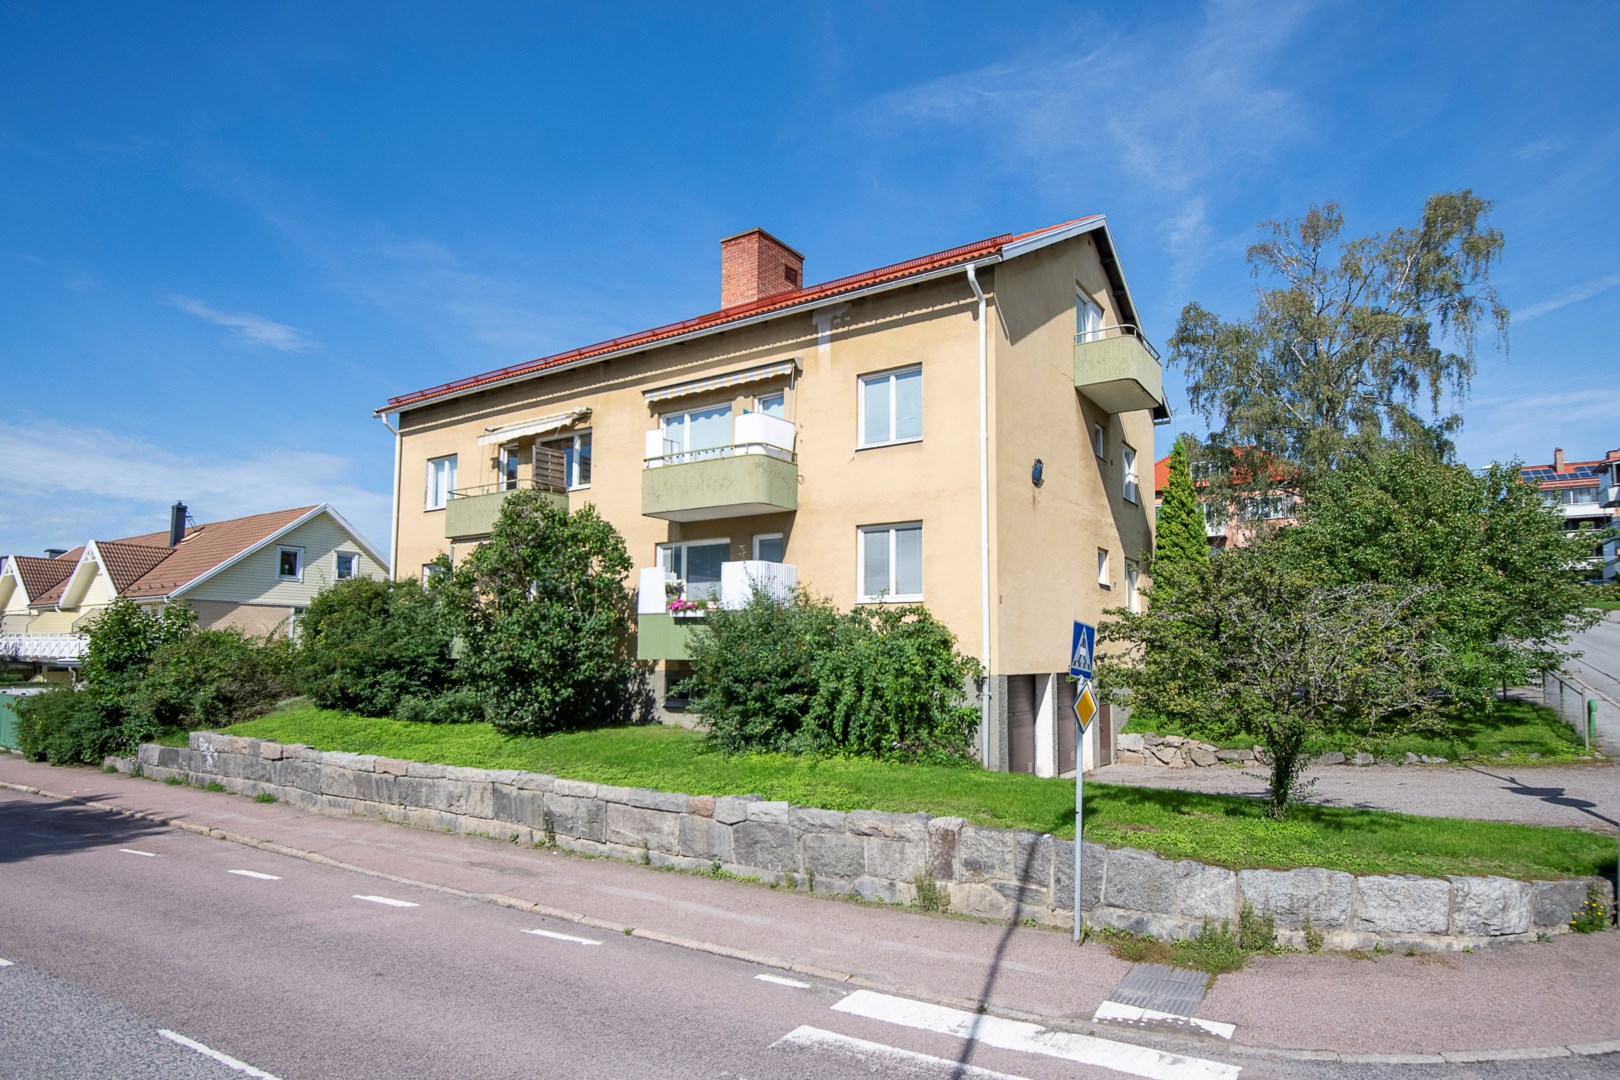 Bostadsrätt i Oxbacken, Västerås, Sverige, Åsgatan 1